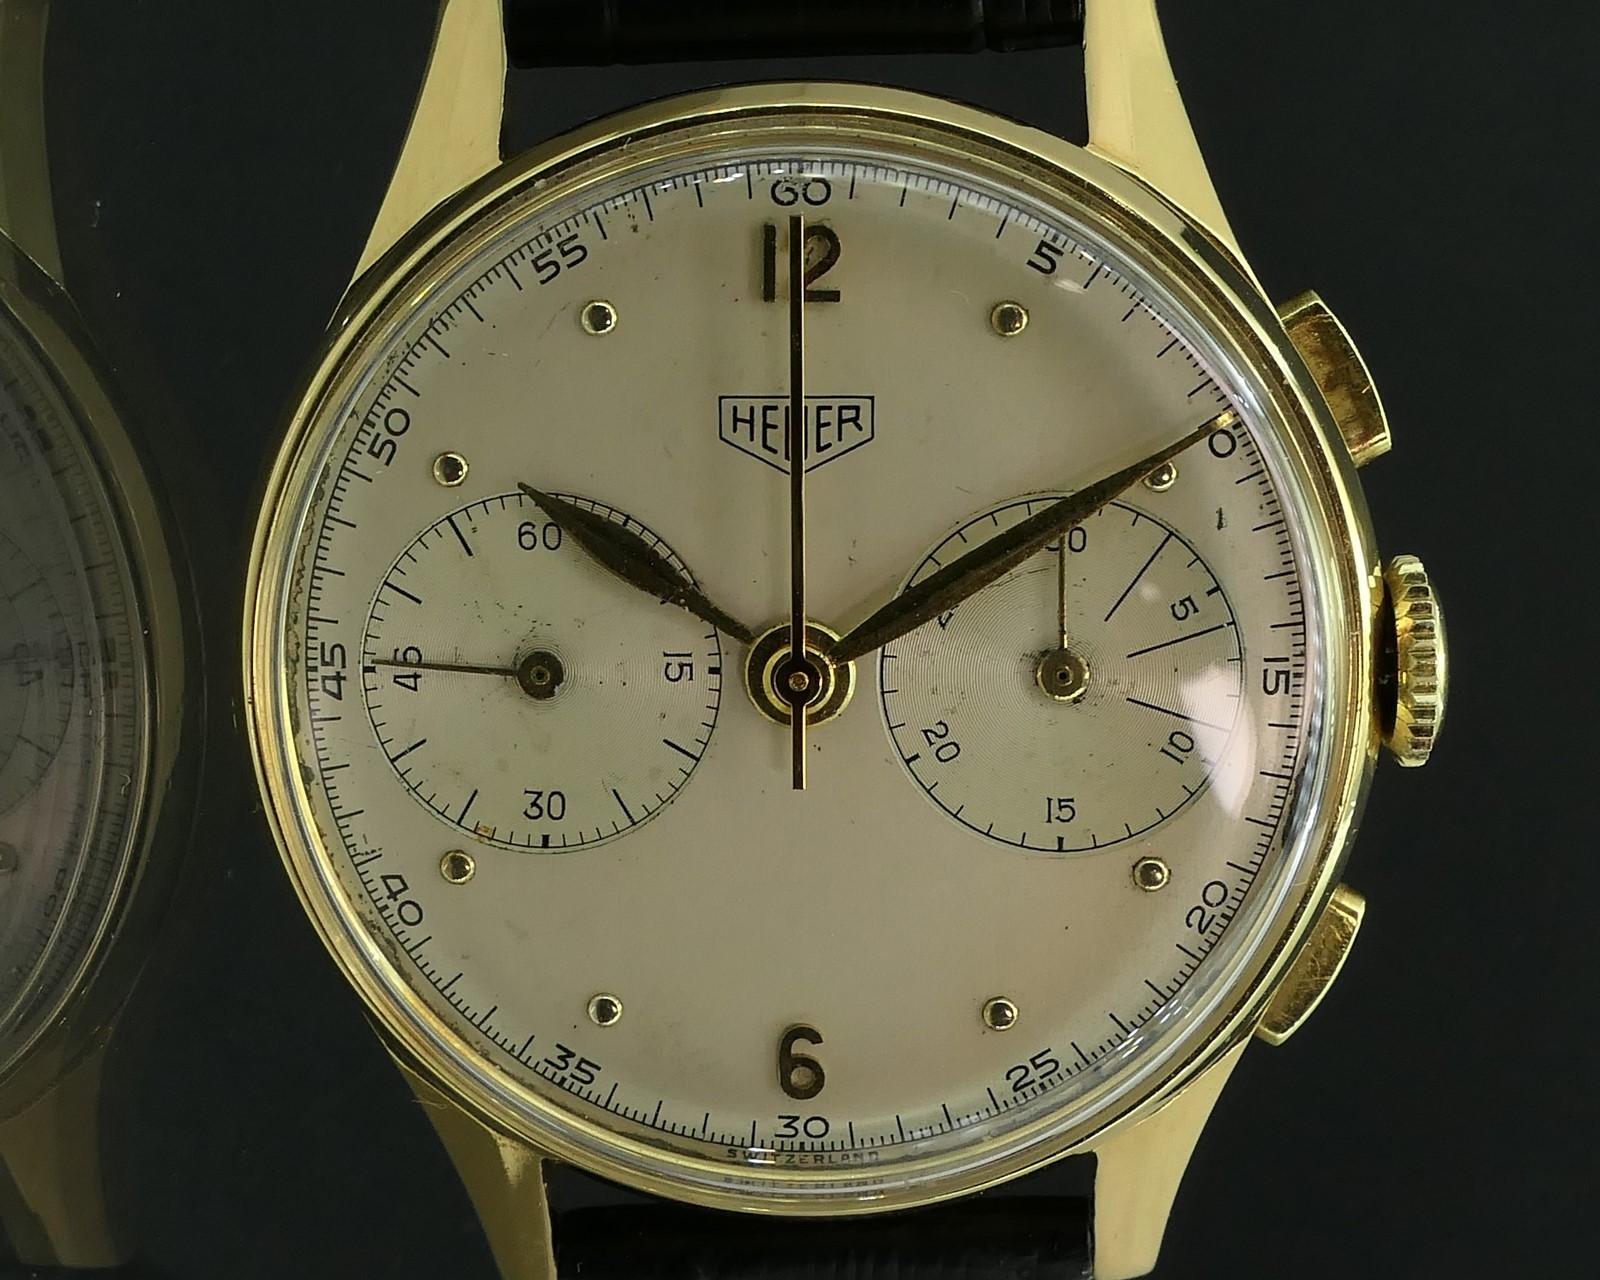 Superbe montre-bracelet de collection des années 1940-1950 de Heuer, avec un boîtier en or massif 18 carats. Cette montre est entièrement d'origine, le cadran étant dans un état incroyable. Cette montre est équipée du rare mouvement Valjoux 23. Il